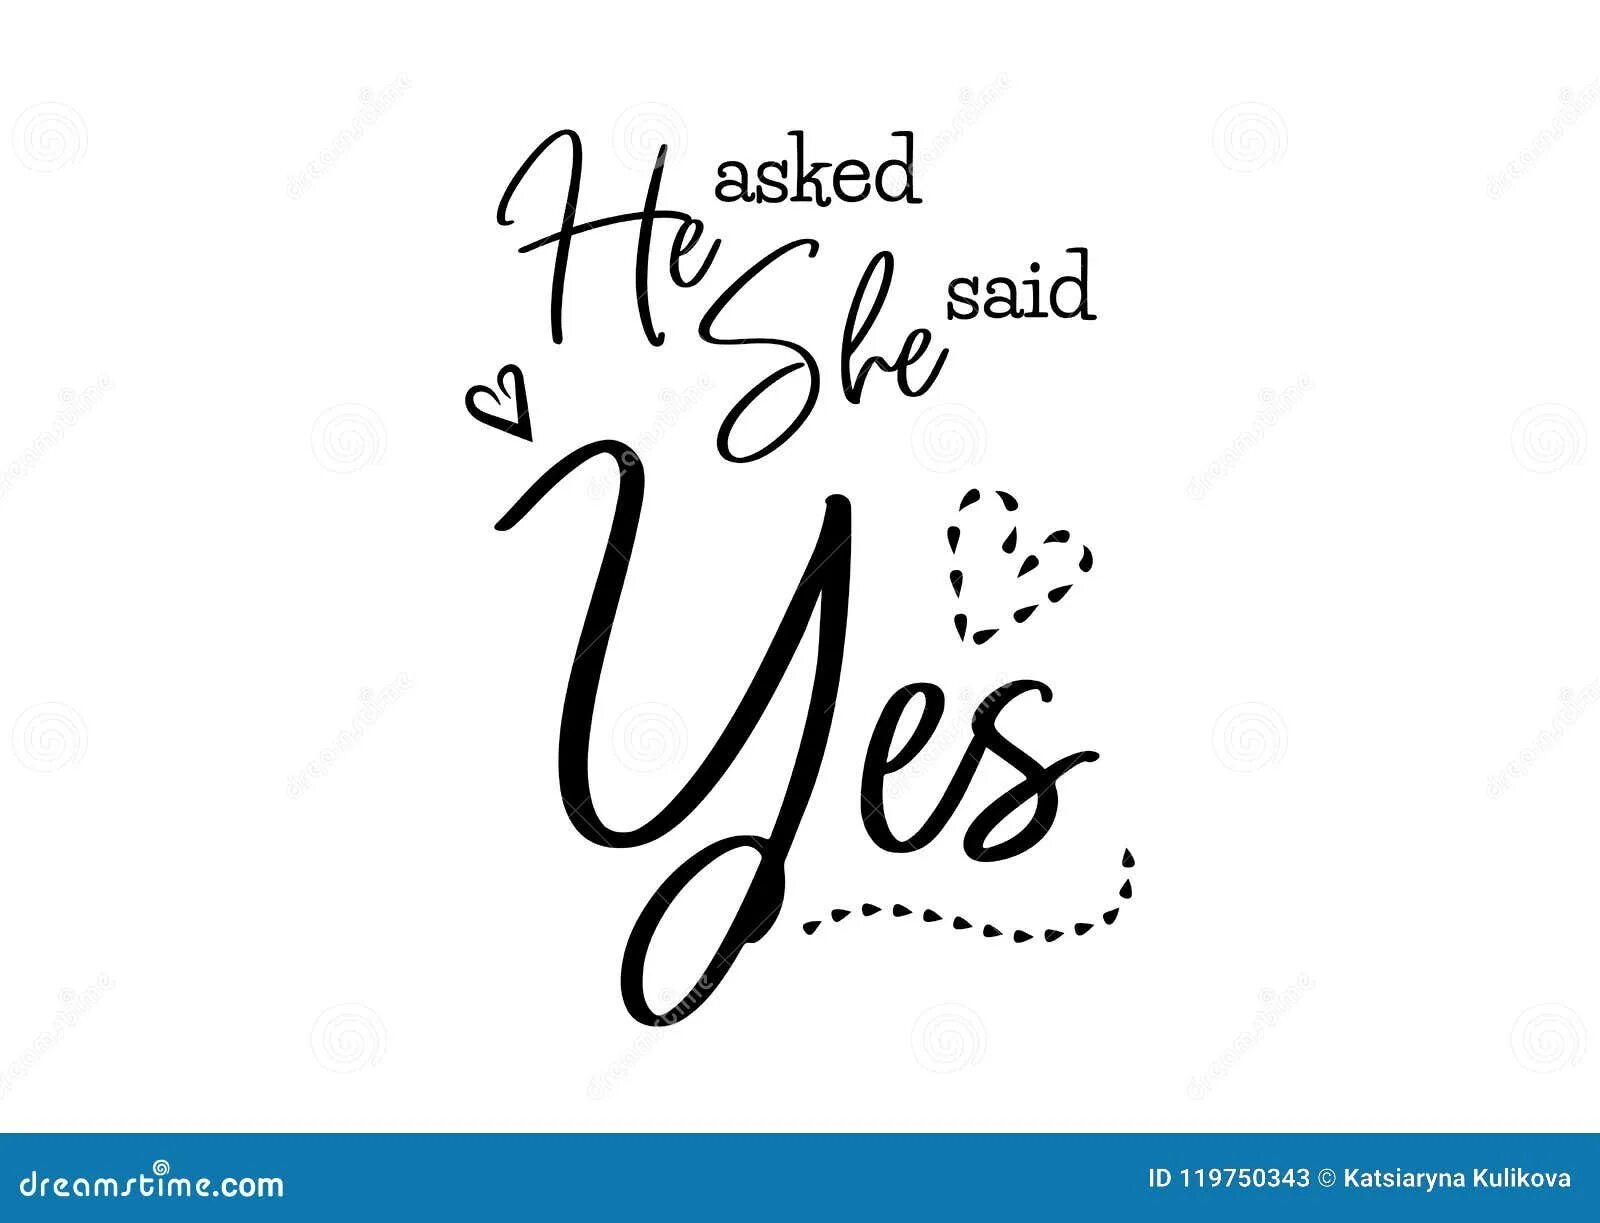 She said Yes. She said Yes надпись. She said Yes картинка. Логотип Yes.